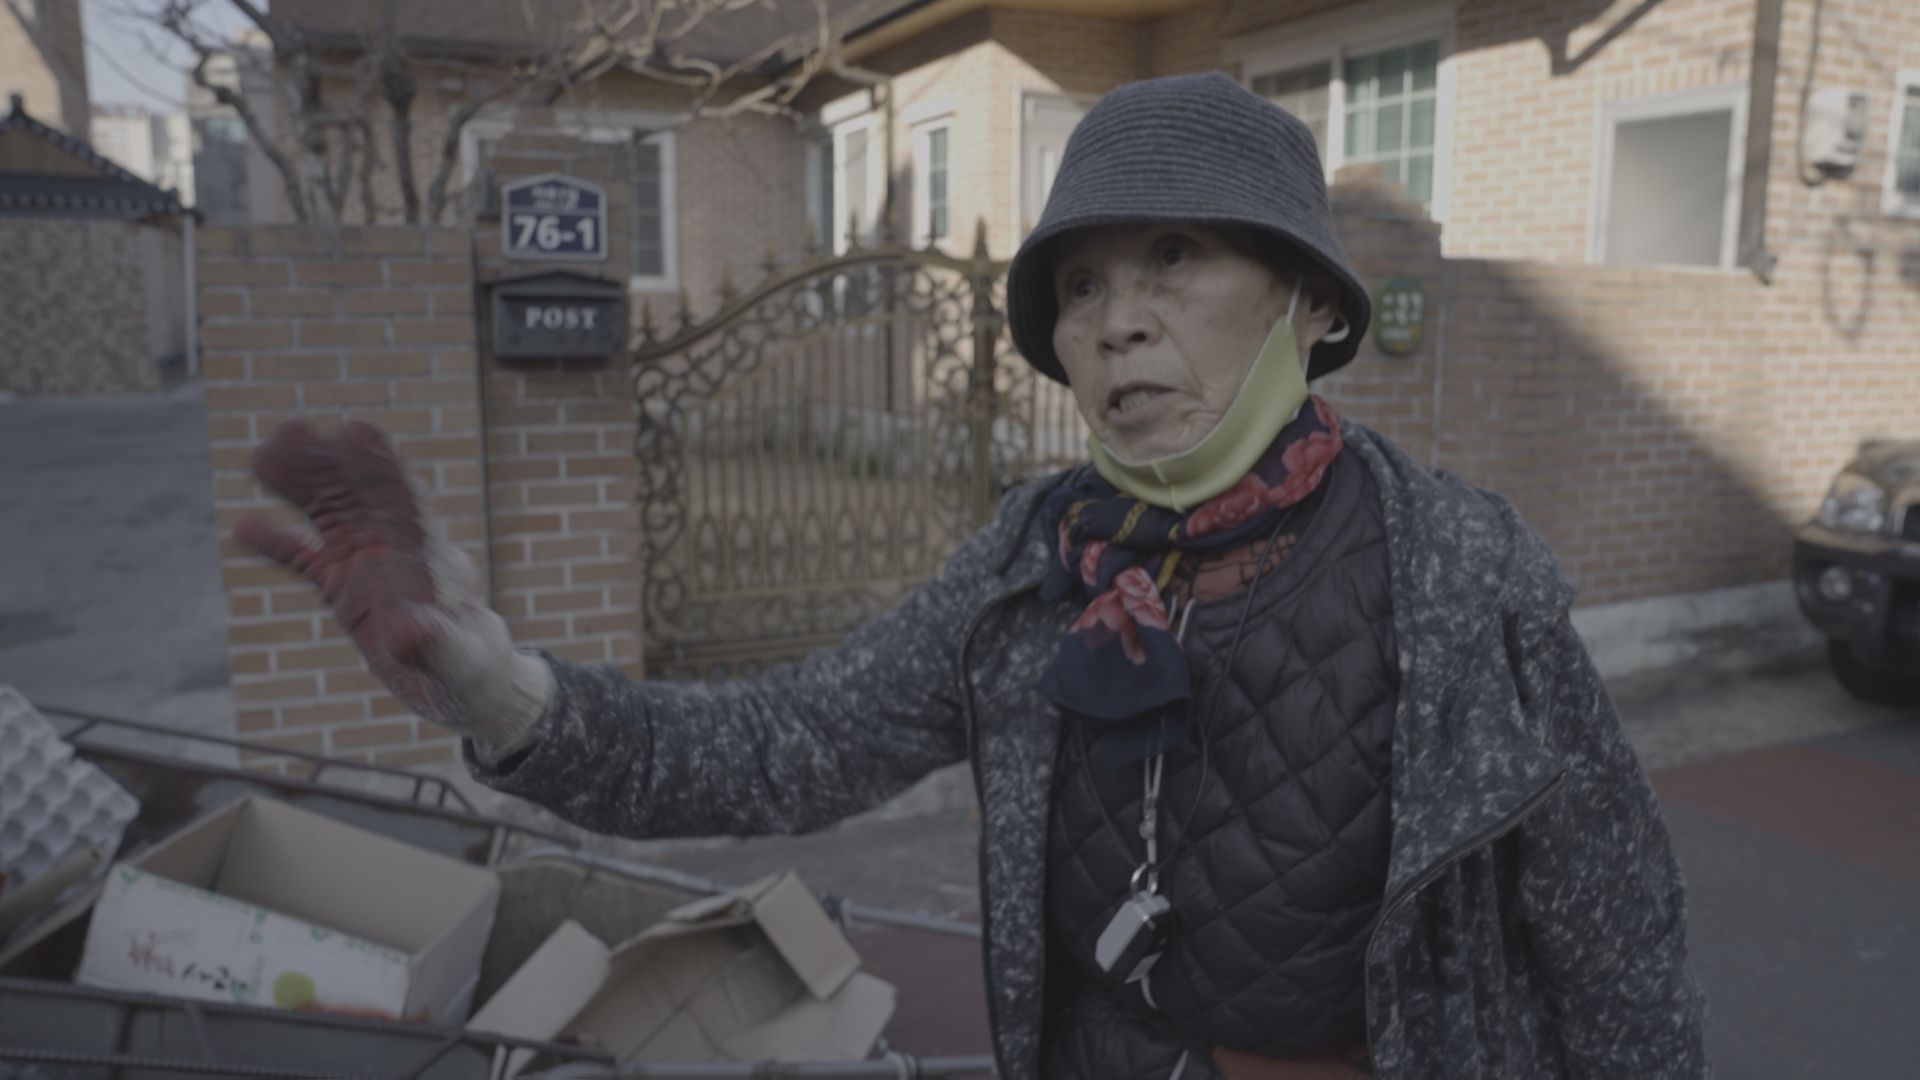 박국자 할머니는 폐지 수집 노동에 자부심을 갖고 있었다.